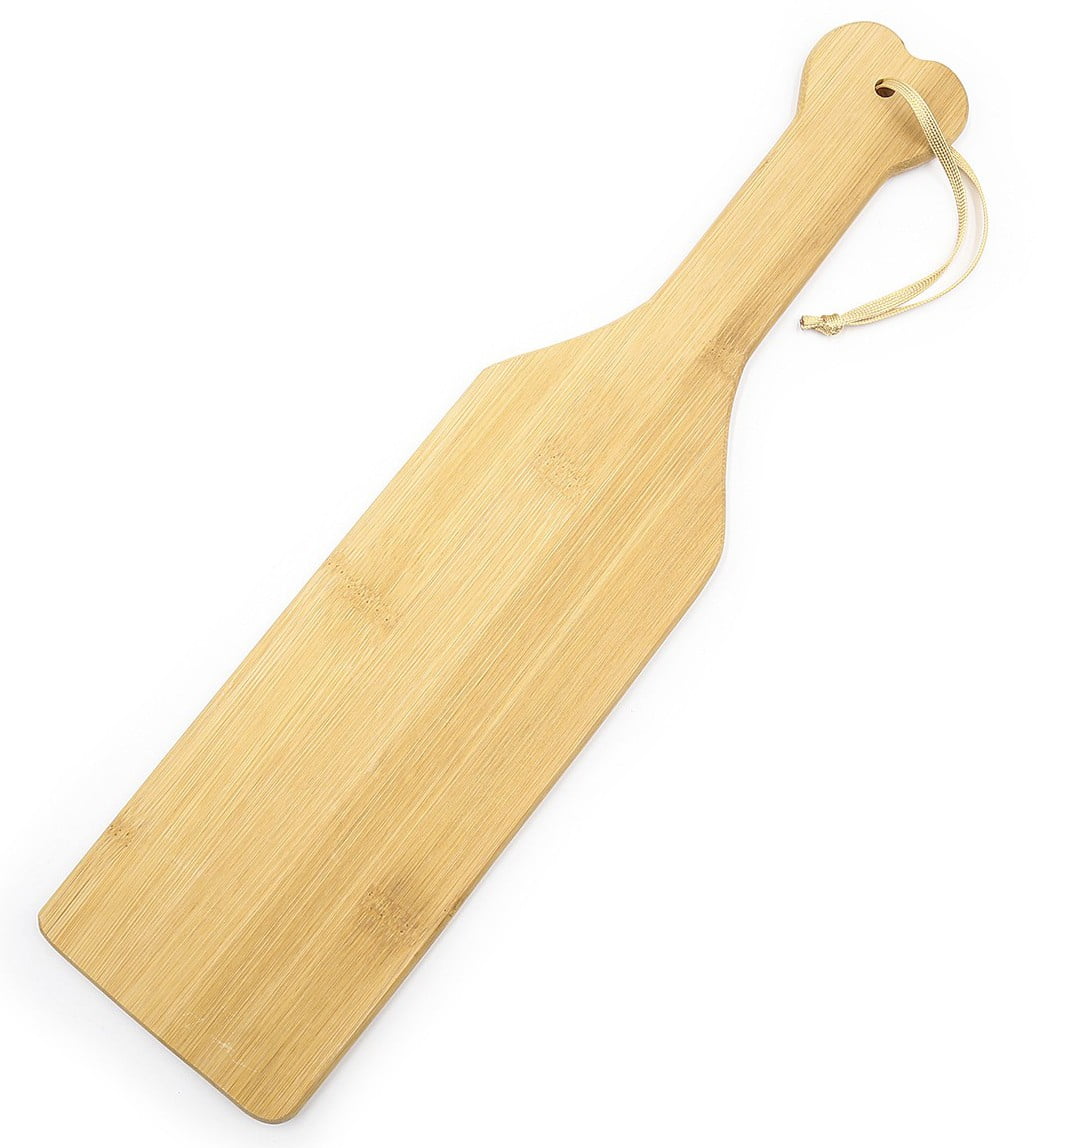 Ce paddle en bambou est idéal pour les moments de soumission. Il permet de taper les fesses